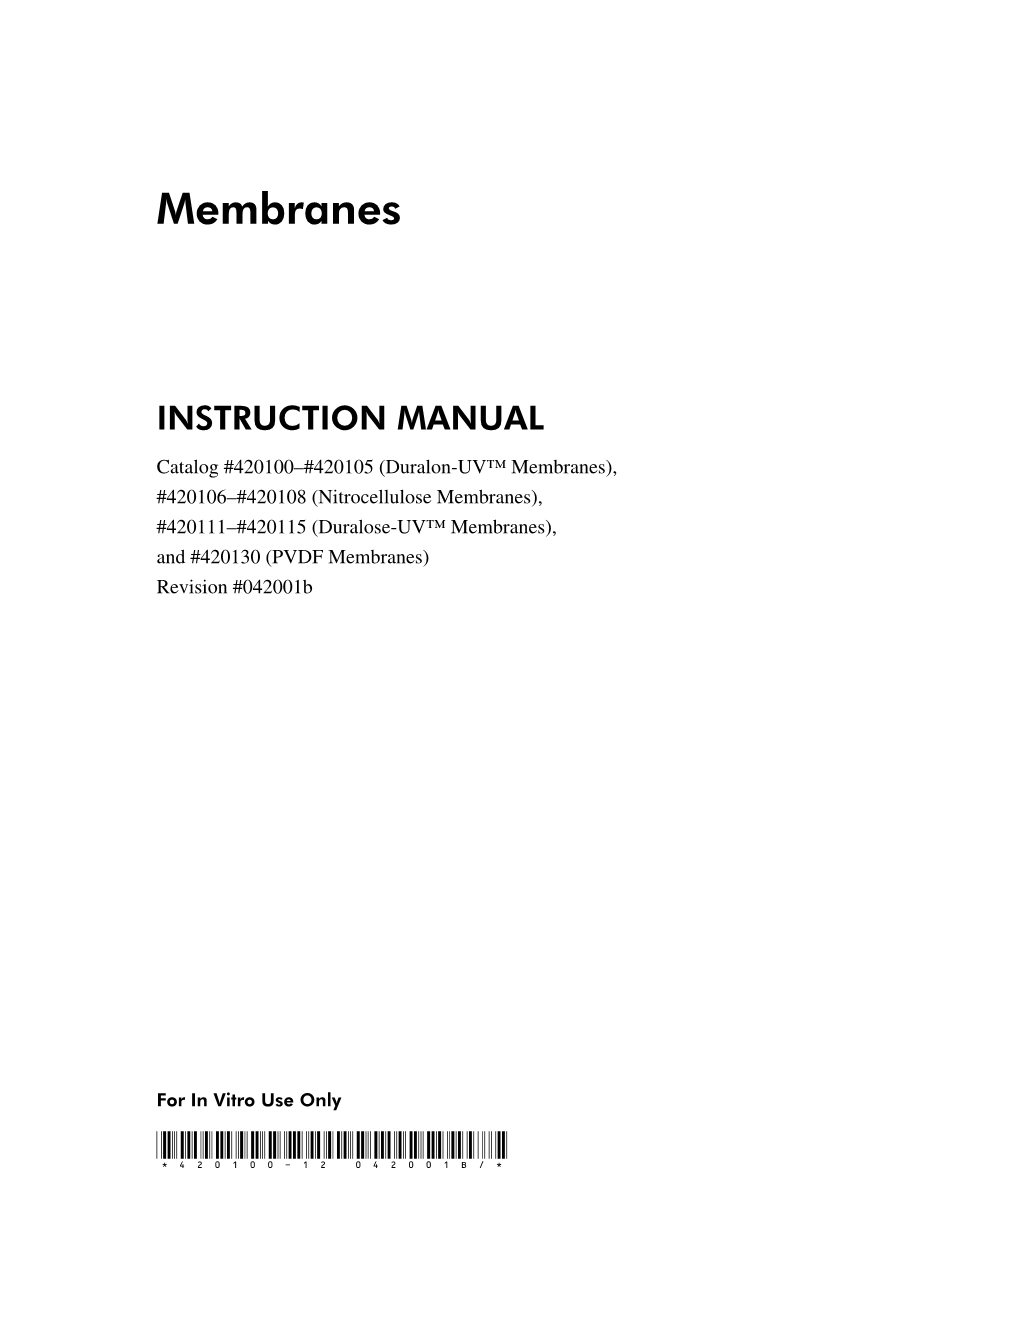 Manuals: Membranes